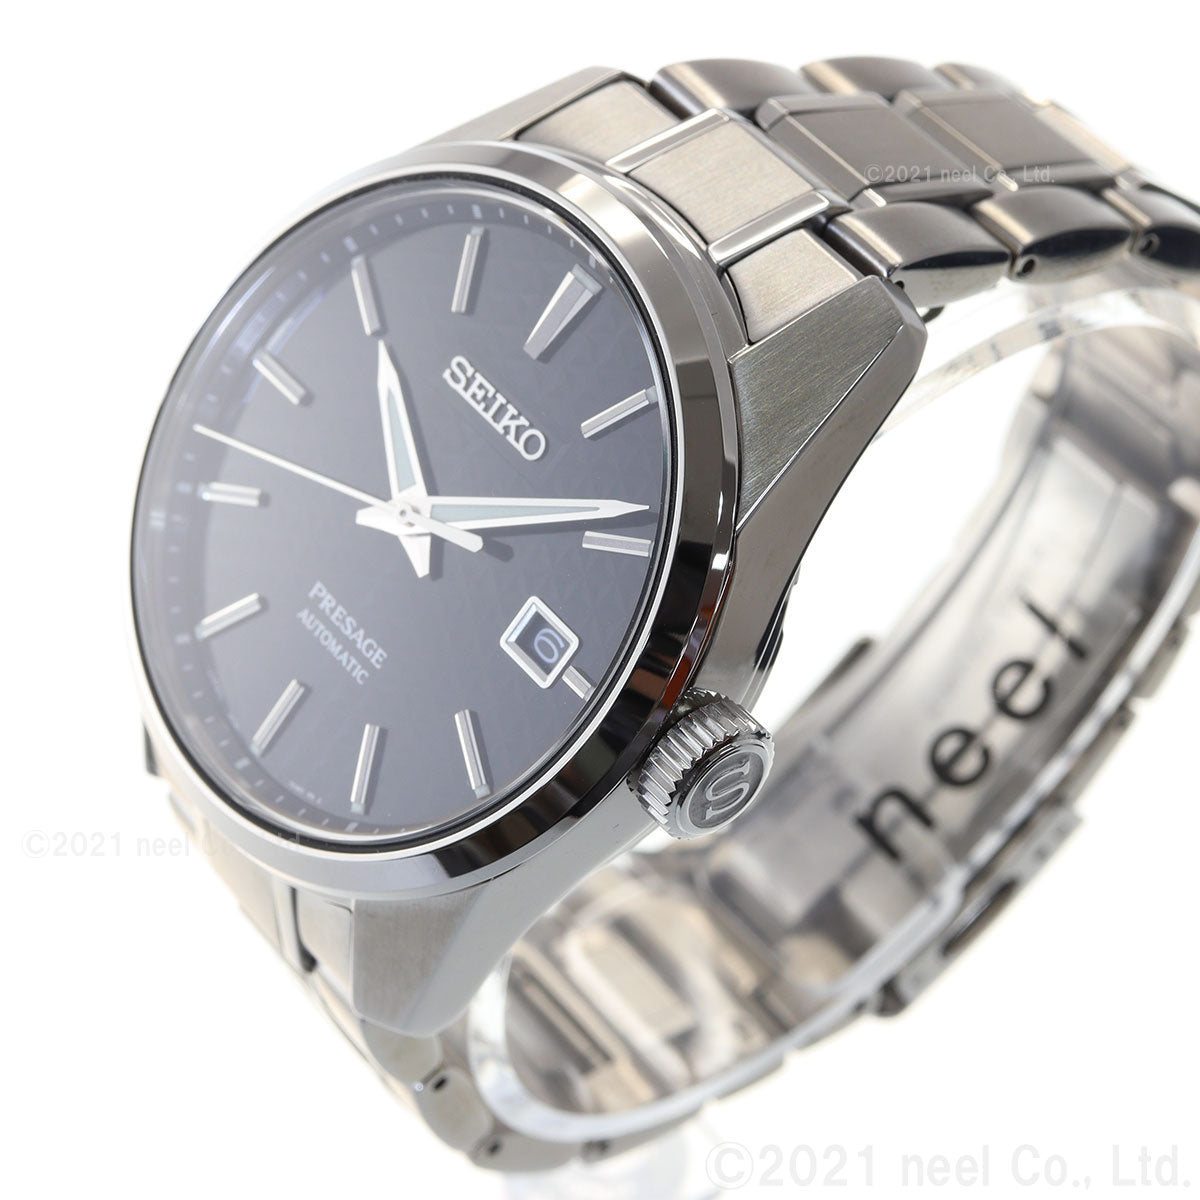 セイコー プレザージュ SEIKO PRESAGE 自動巻き メカニカル コアショップ専用 流通限定モデル 腕時計 メンズ プレステージライン Sharp Edged Series SARX083